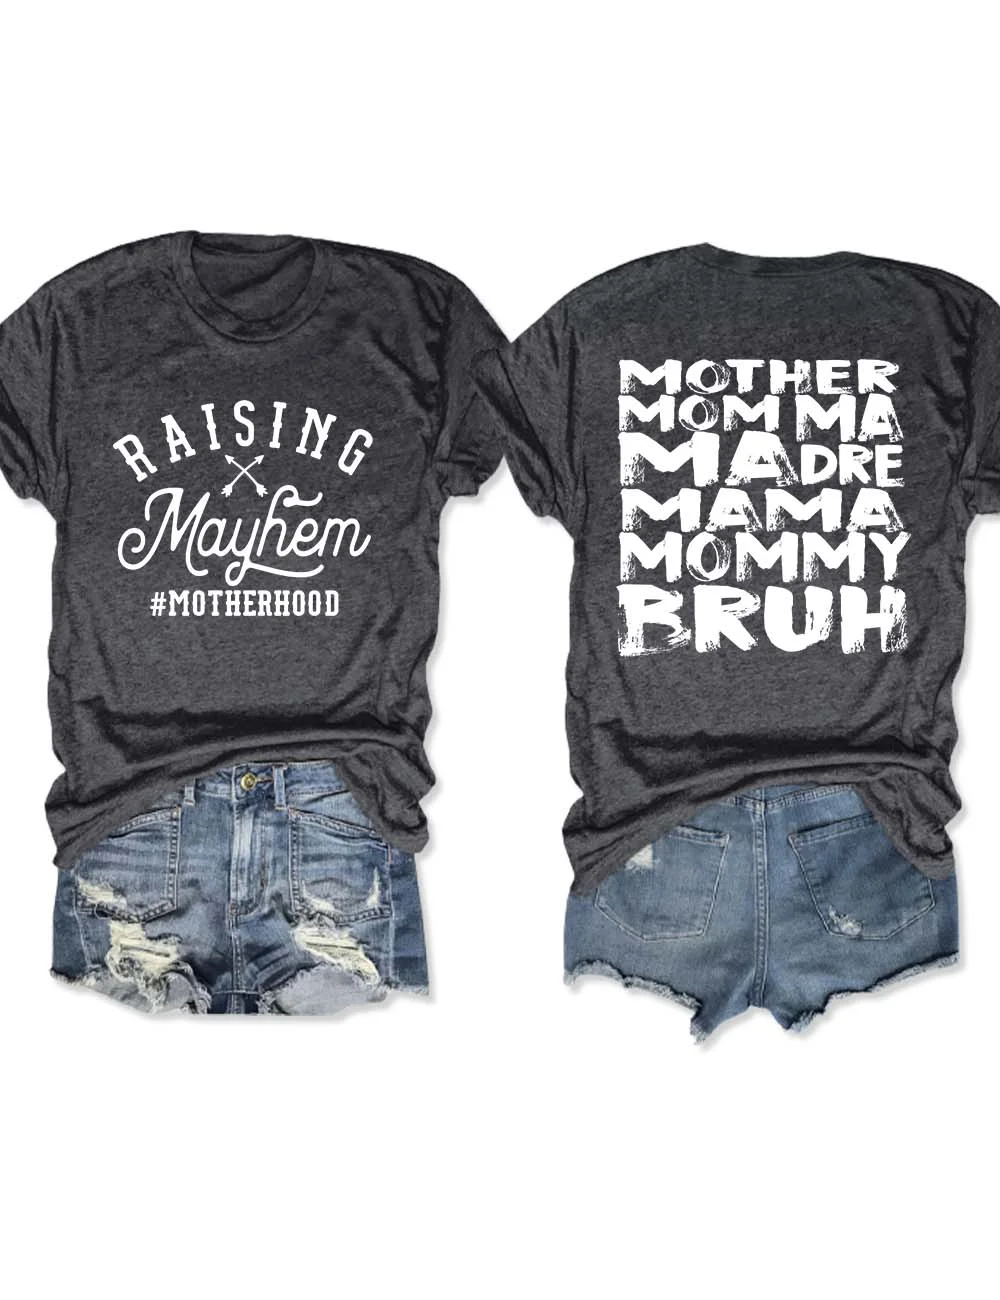 Raising Mayhem Motherhood T-Shirt